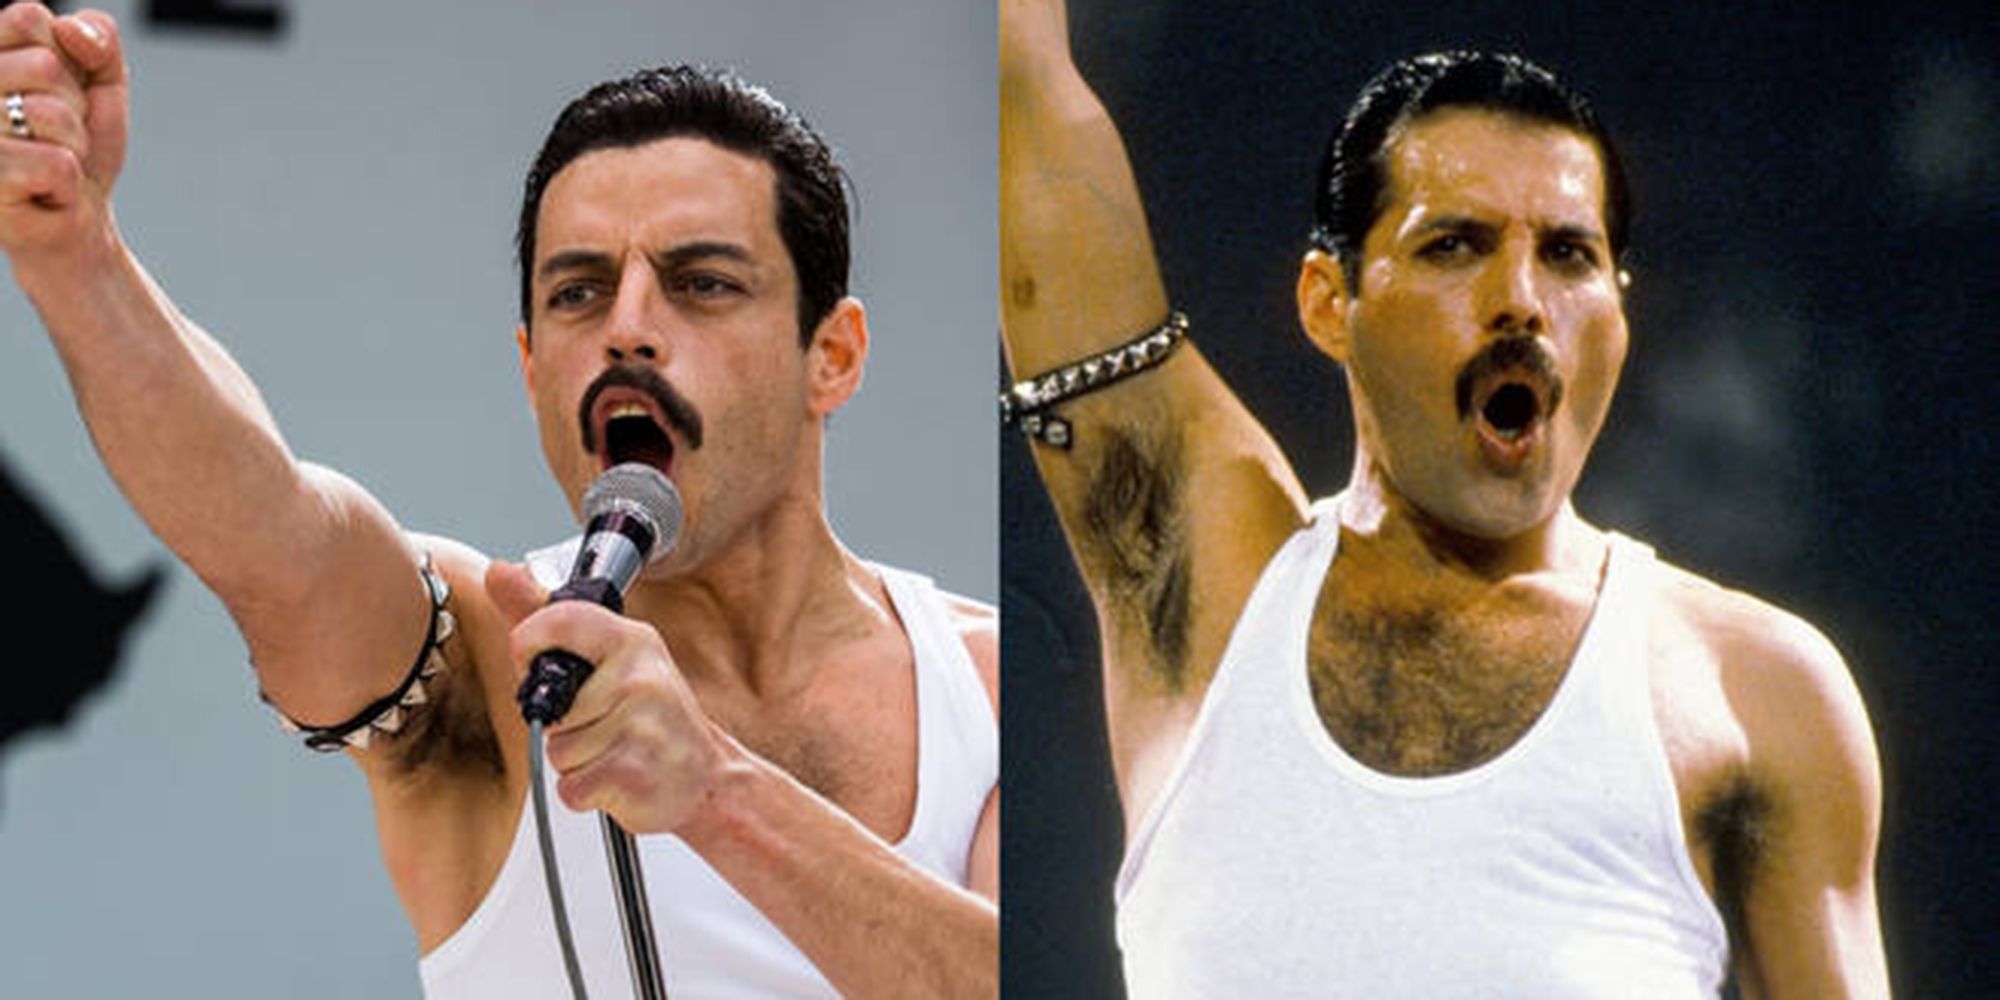 Split image of Rami Malek and Freddie Mercury